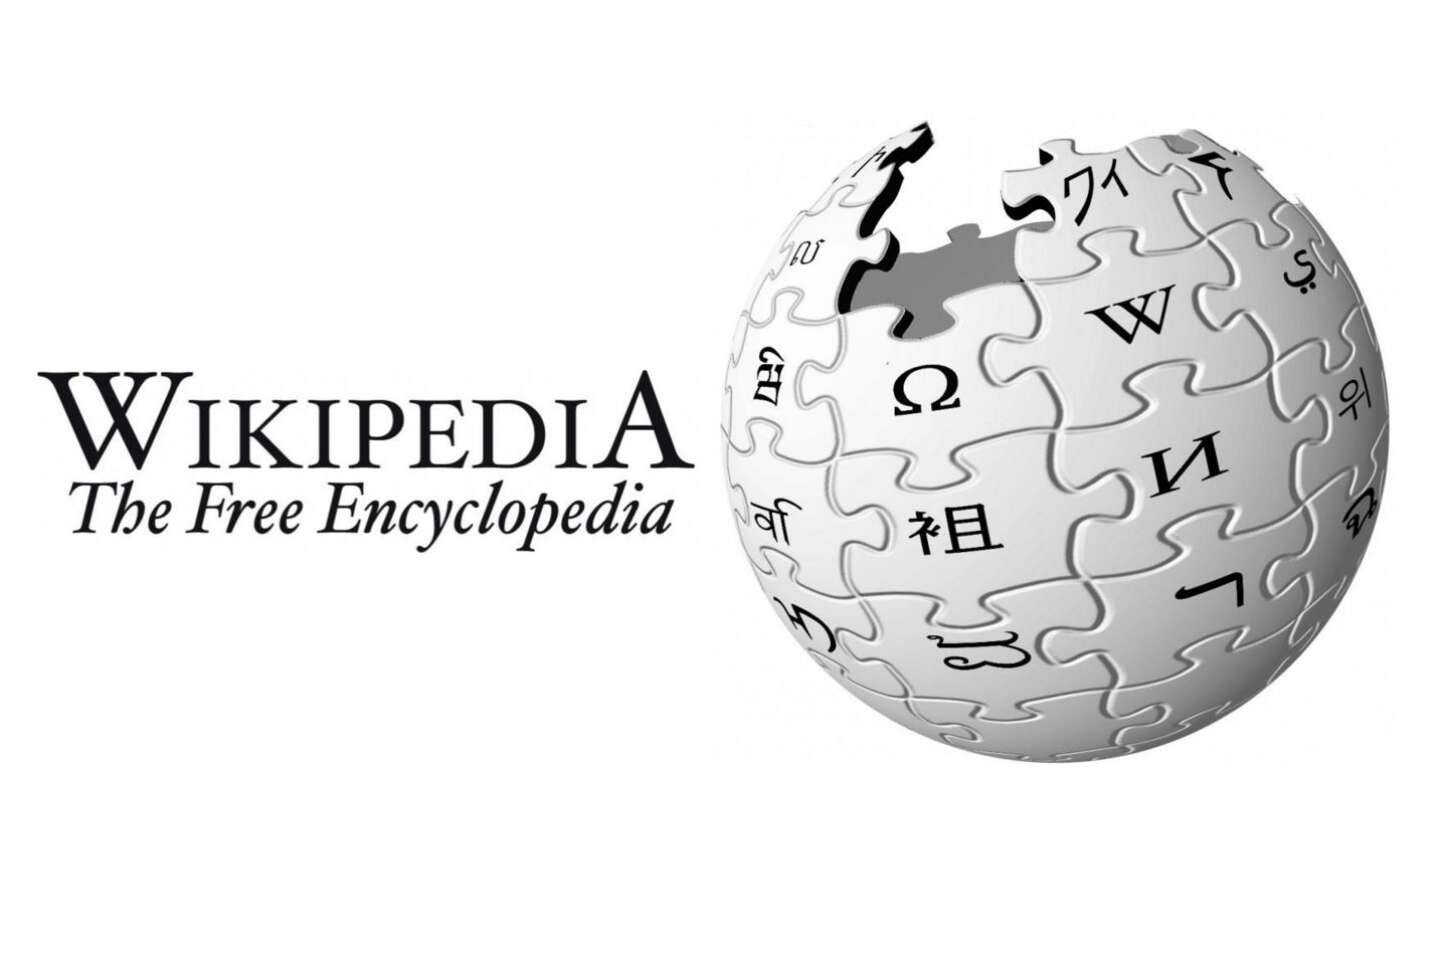 Le chiffrement a contribué à faire baisser la censure de Wikipédia dans le monde